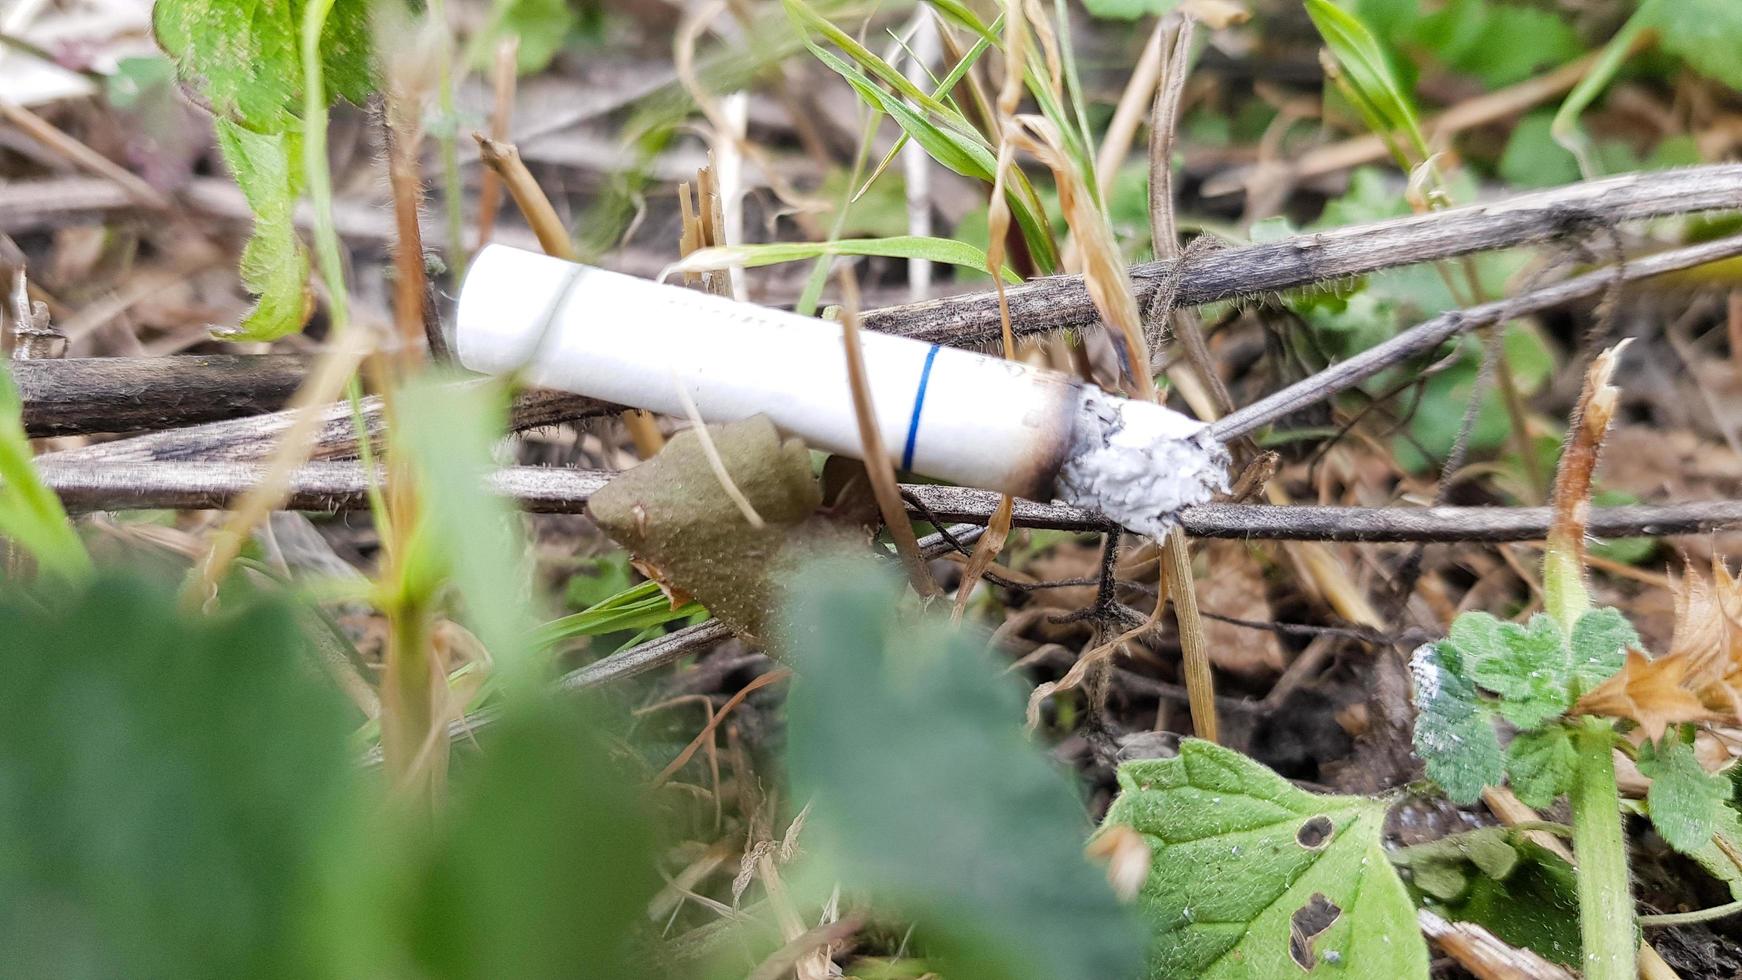 sigaretta gettata accidentalmente nell'erba secca. mozzicone di sigaretta gettato in un prato verde, inquinando la natura e l'ambiente foto